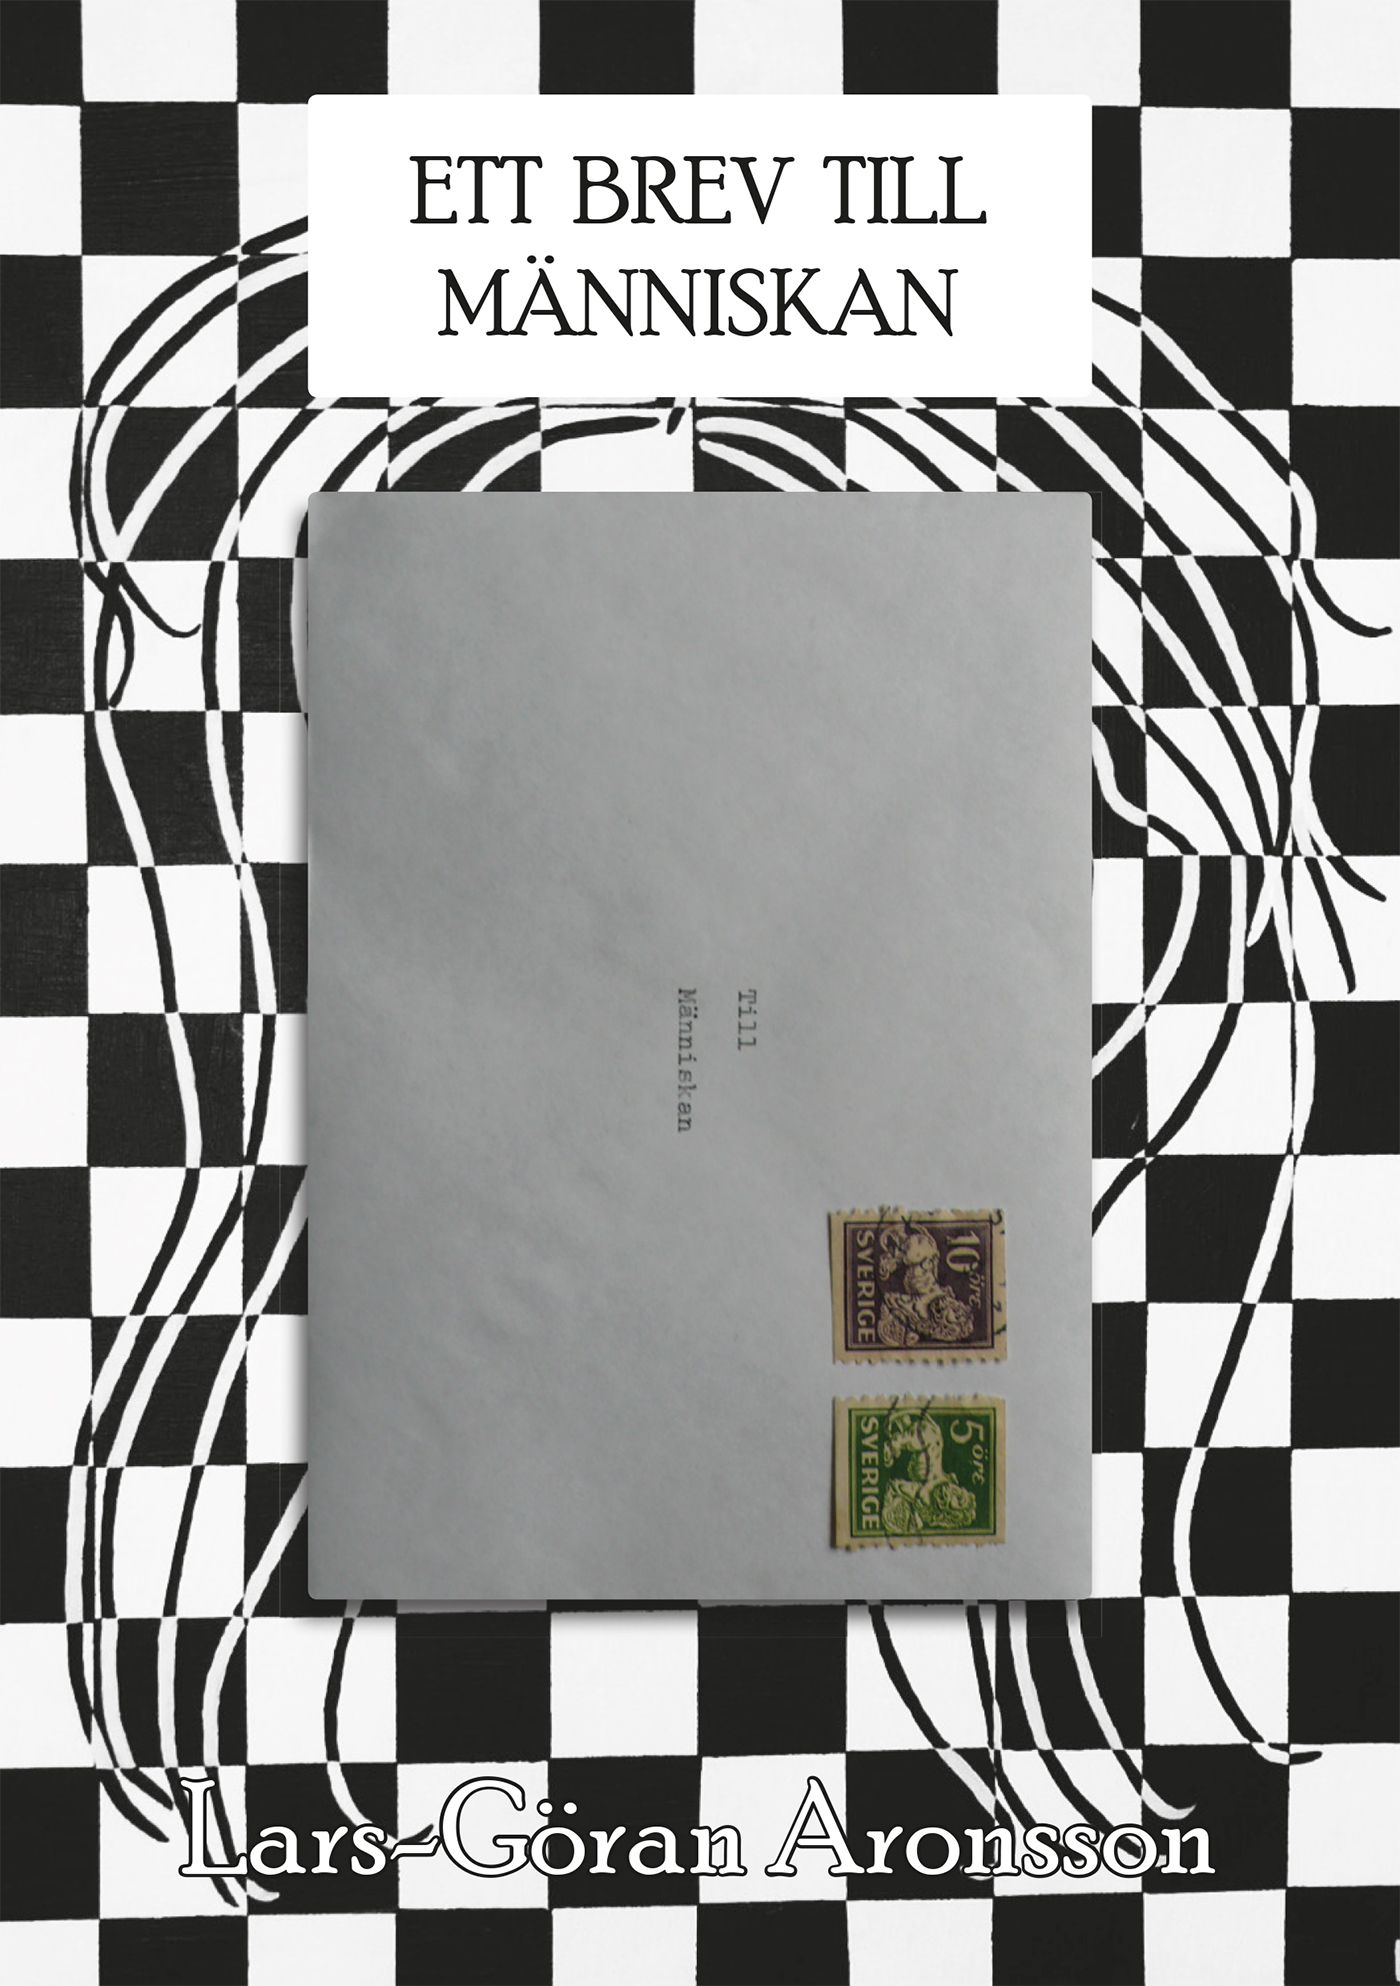 Ett brev till människan, e-bok av Lars-Göran Aronsson